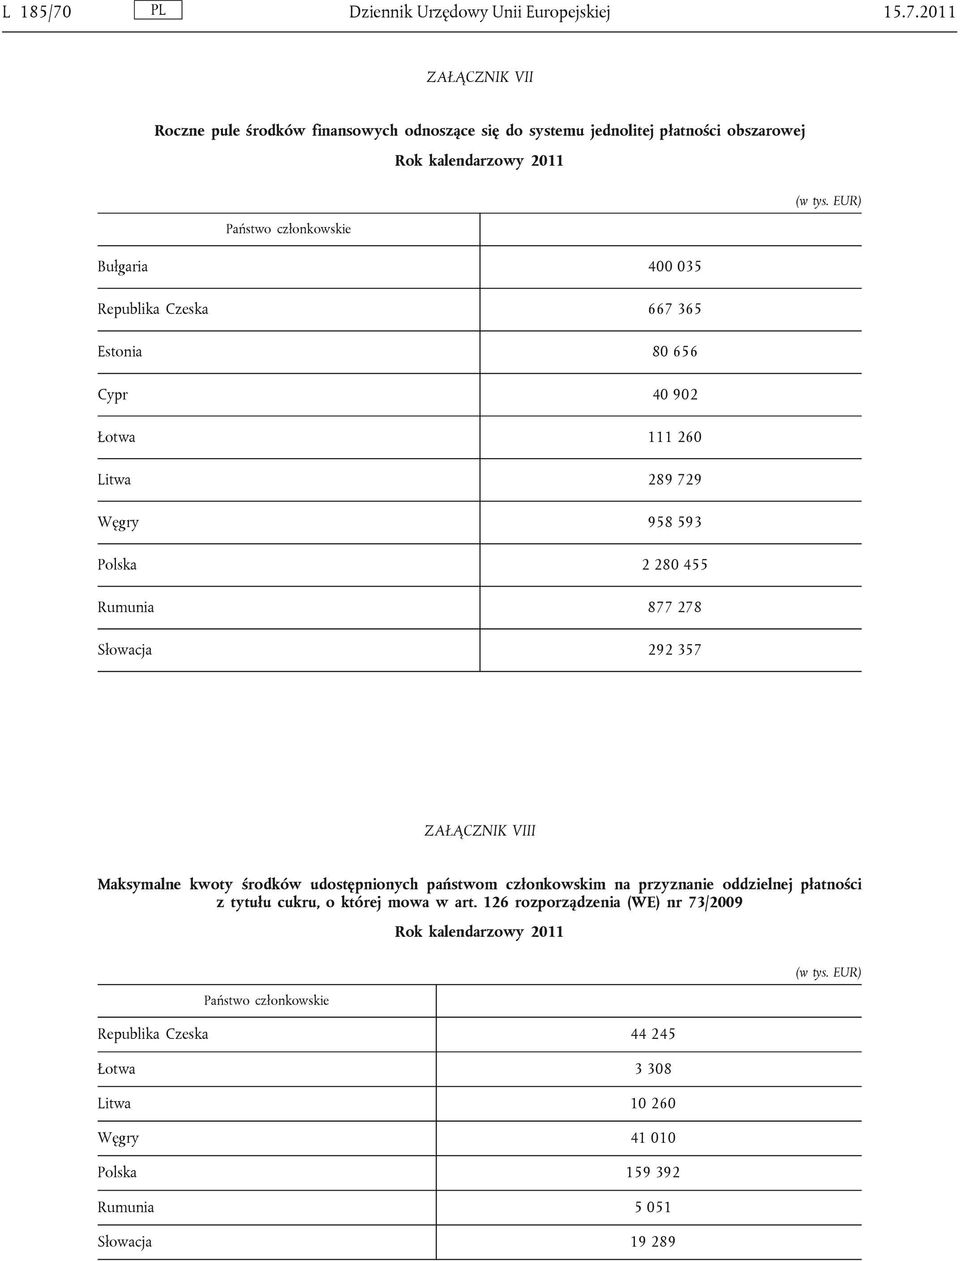 2011 ZAŁĄCZNIK VII Roczne pule środków finansowych odnoszące się do systemu jednolitej płatności obszarowej Bułgaria 400 035 Republika Czeska 667 365